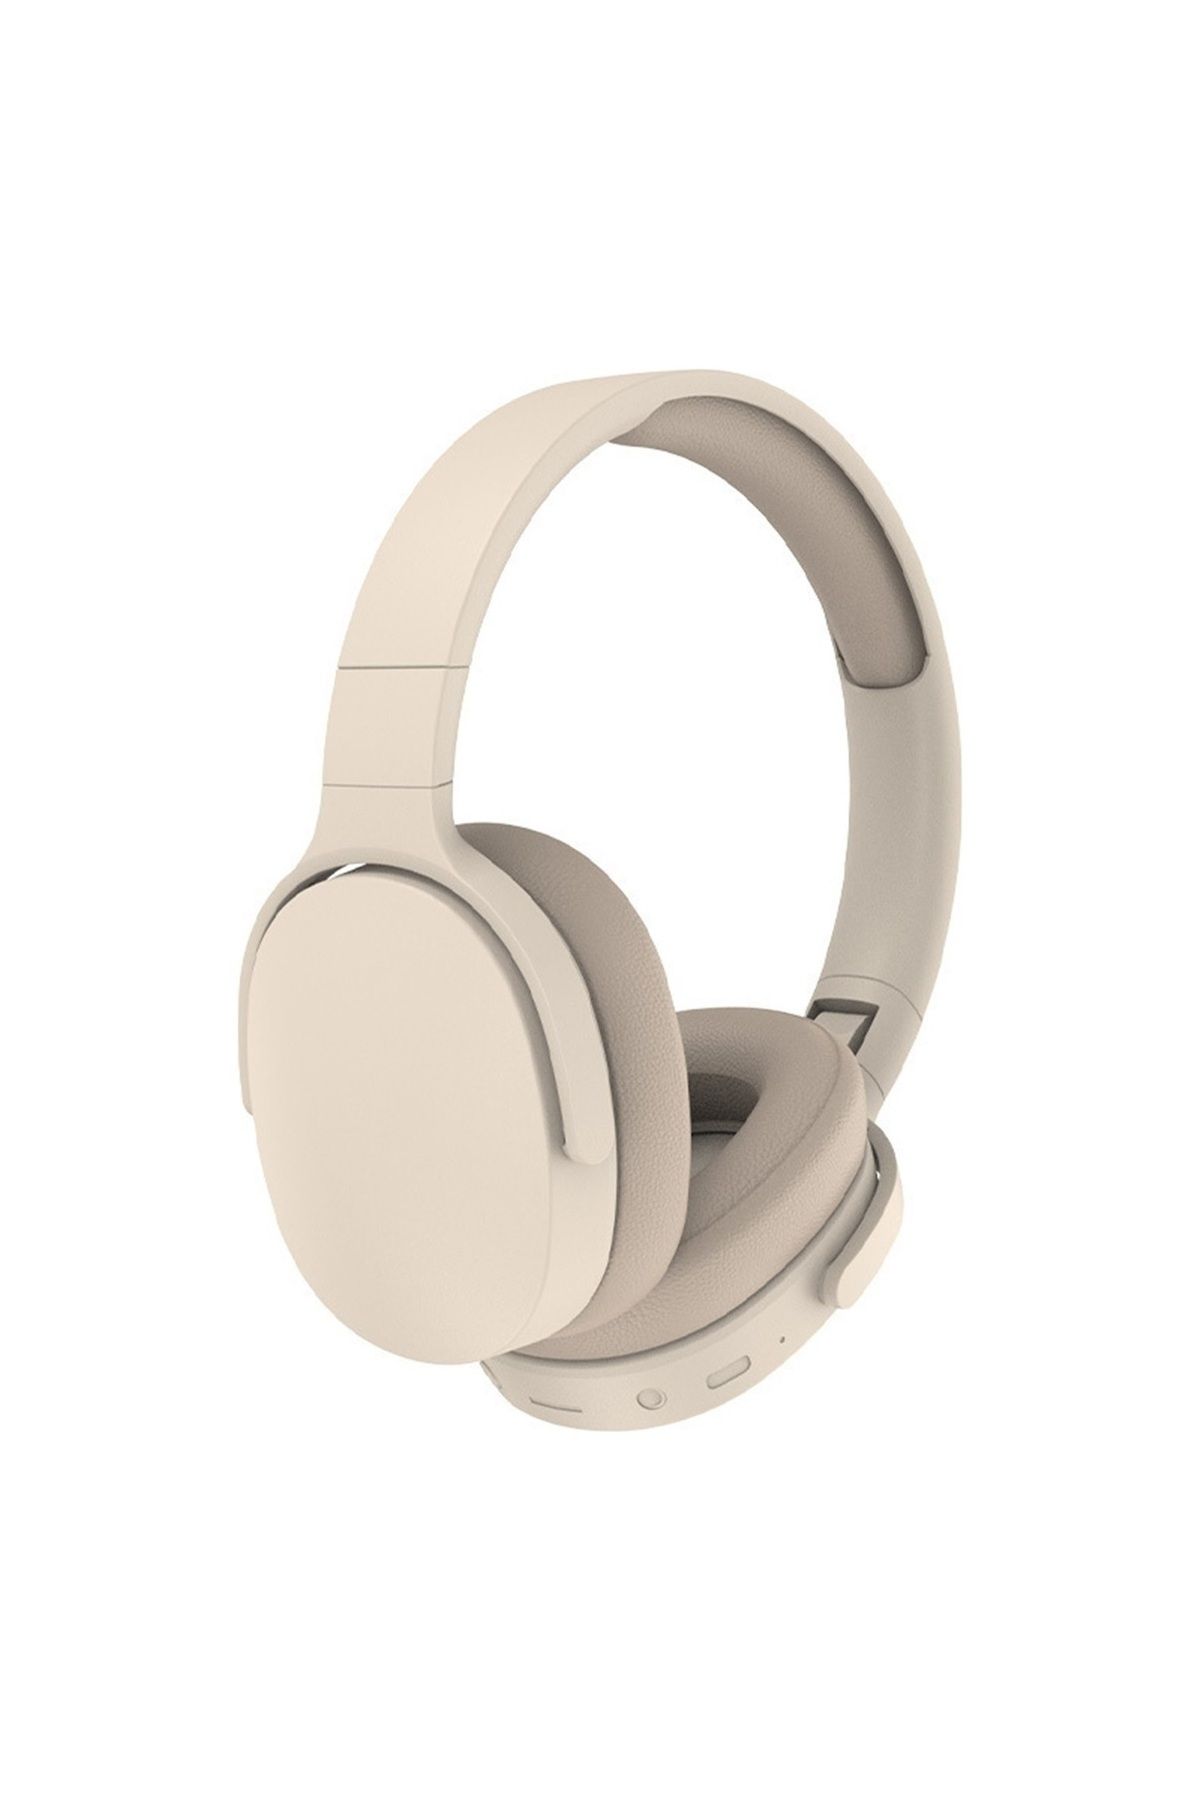 Mmctech Yeni Nesil Şık Ergonomik Tasarım Extra Bass Kablosuz Bluetooth Mikrofonlu Spor Kulaklık Sd Kartlı